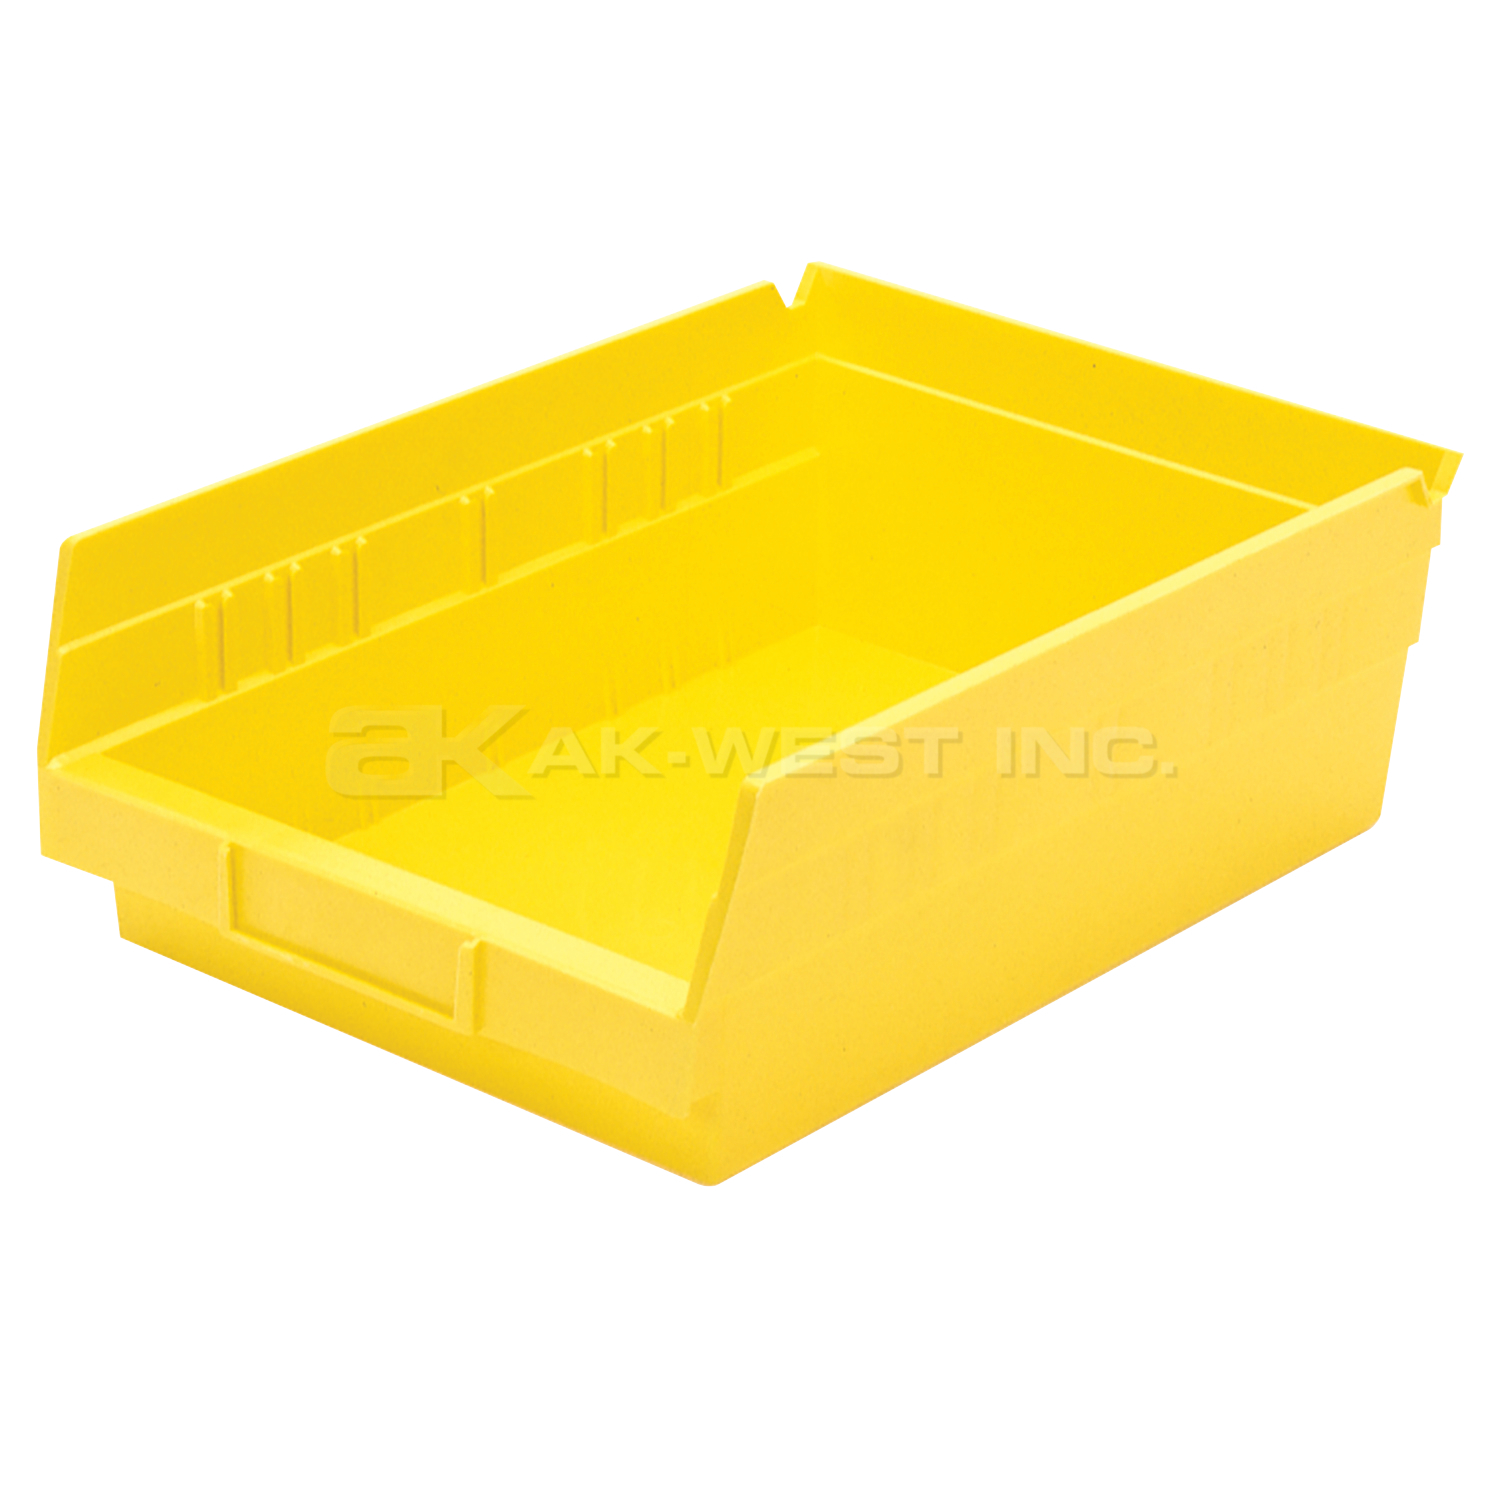 Yellow, 11-5/8" x 8-3/8" x 4" Shelf Bin (12 Per Carton)